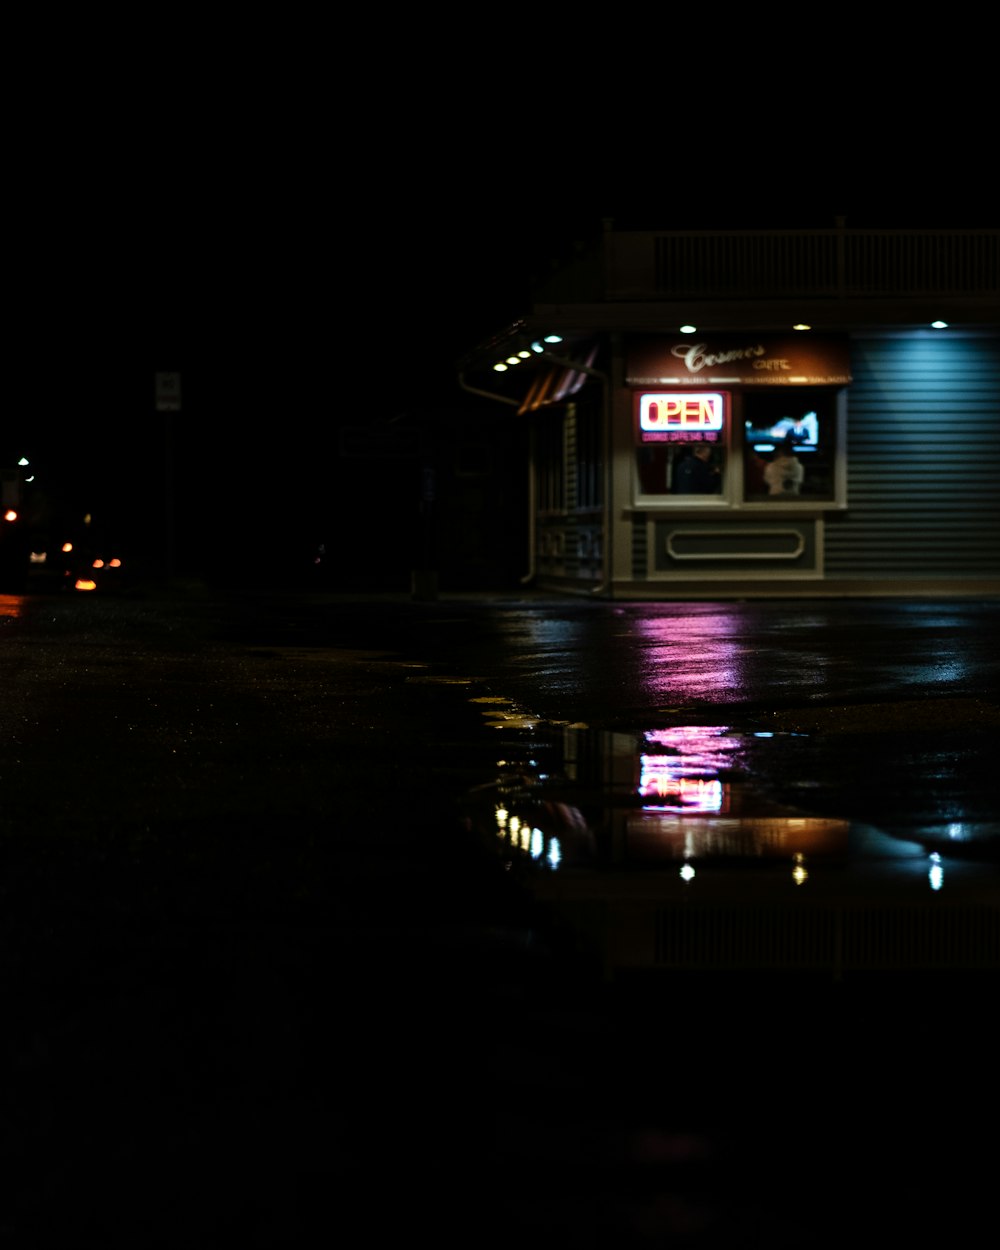 Un negozio al buio e una pozzanghera che riflette le luci al neon dalla vetrina del negozio